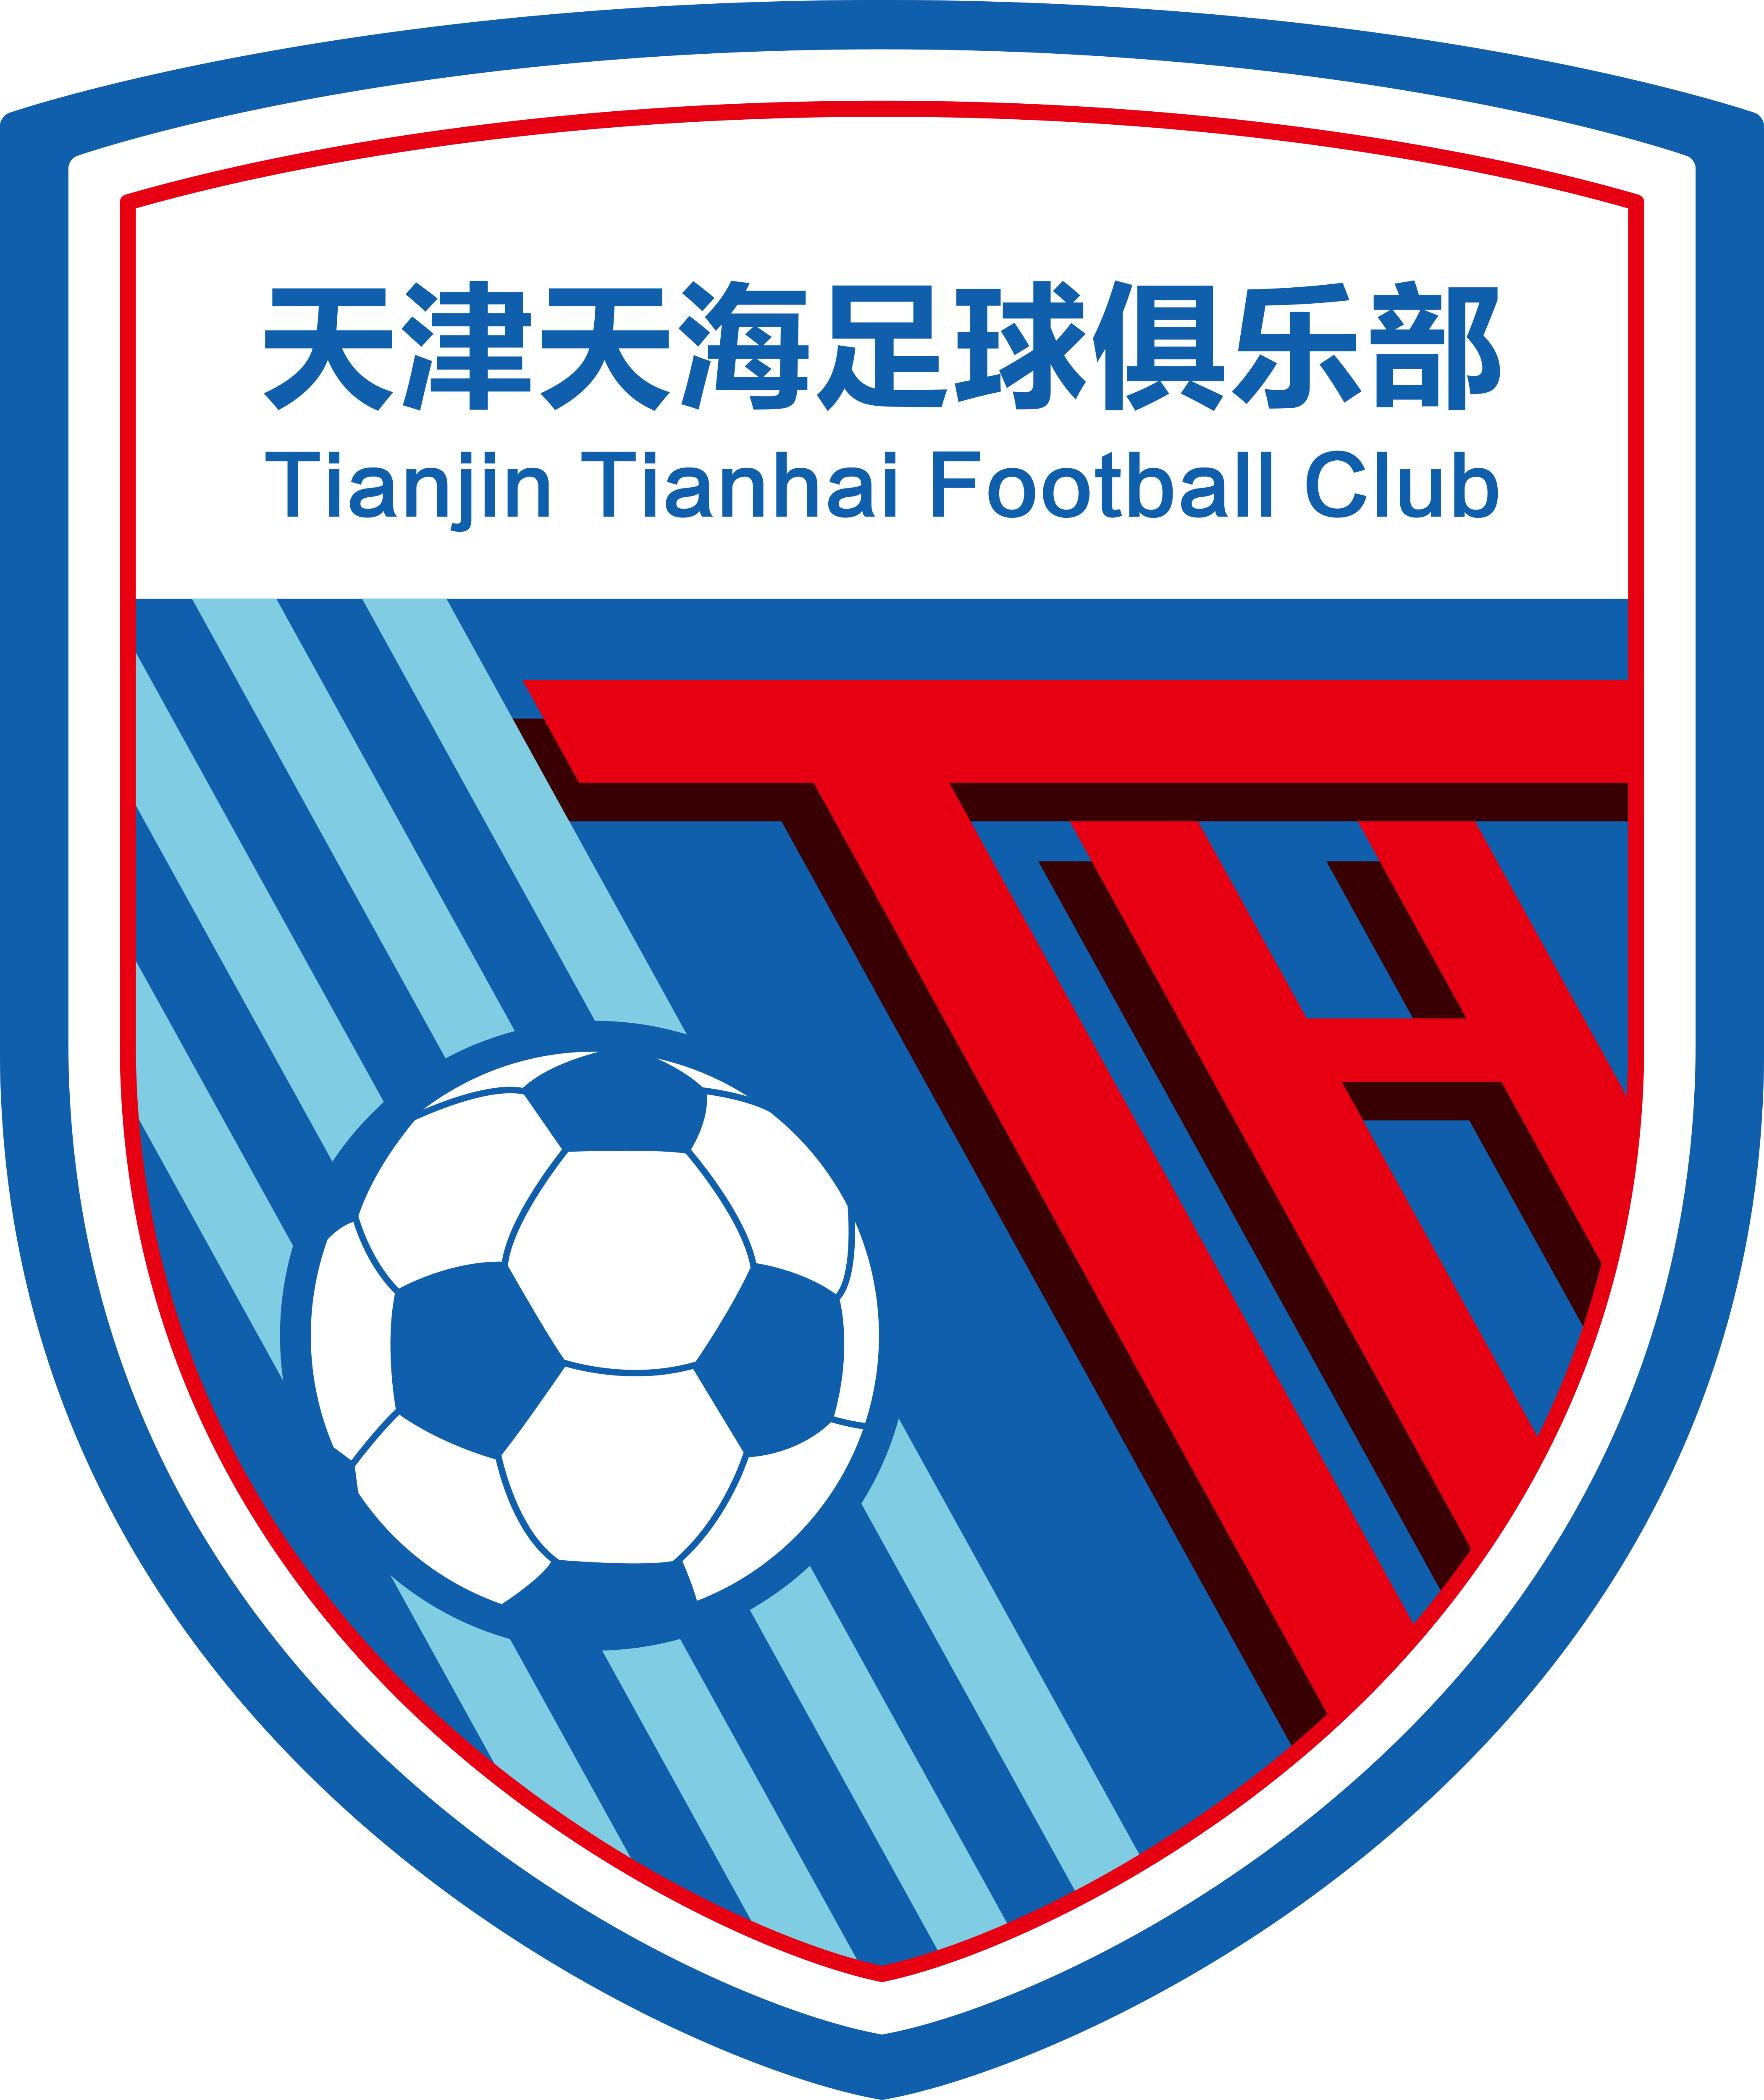 天津天海足球俱樂部隊徽